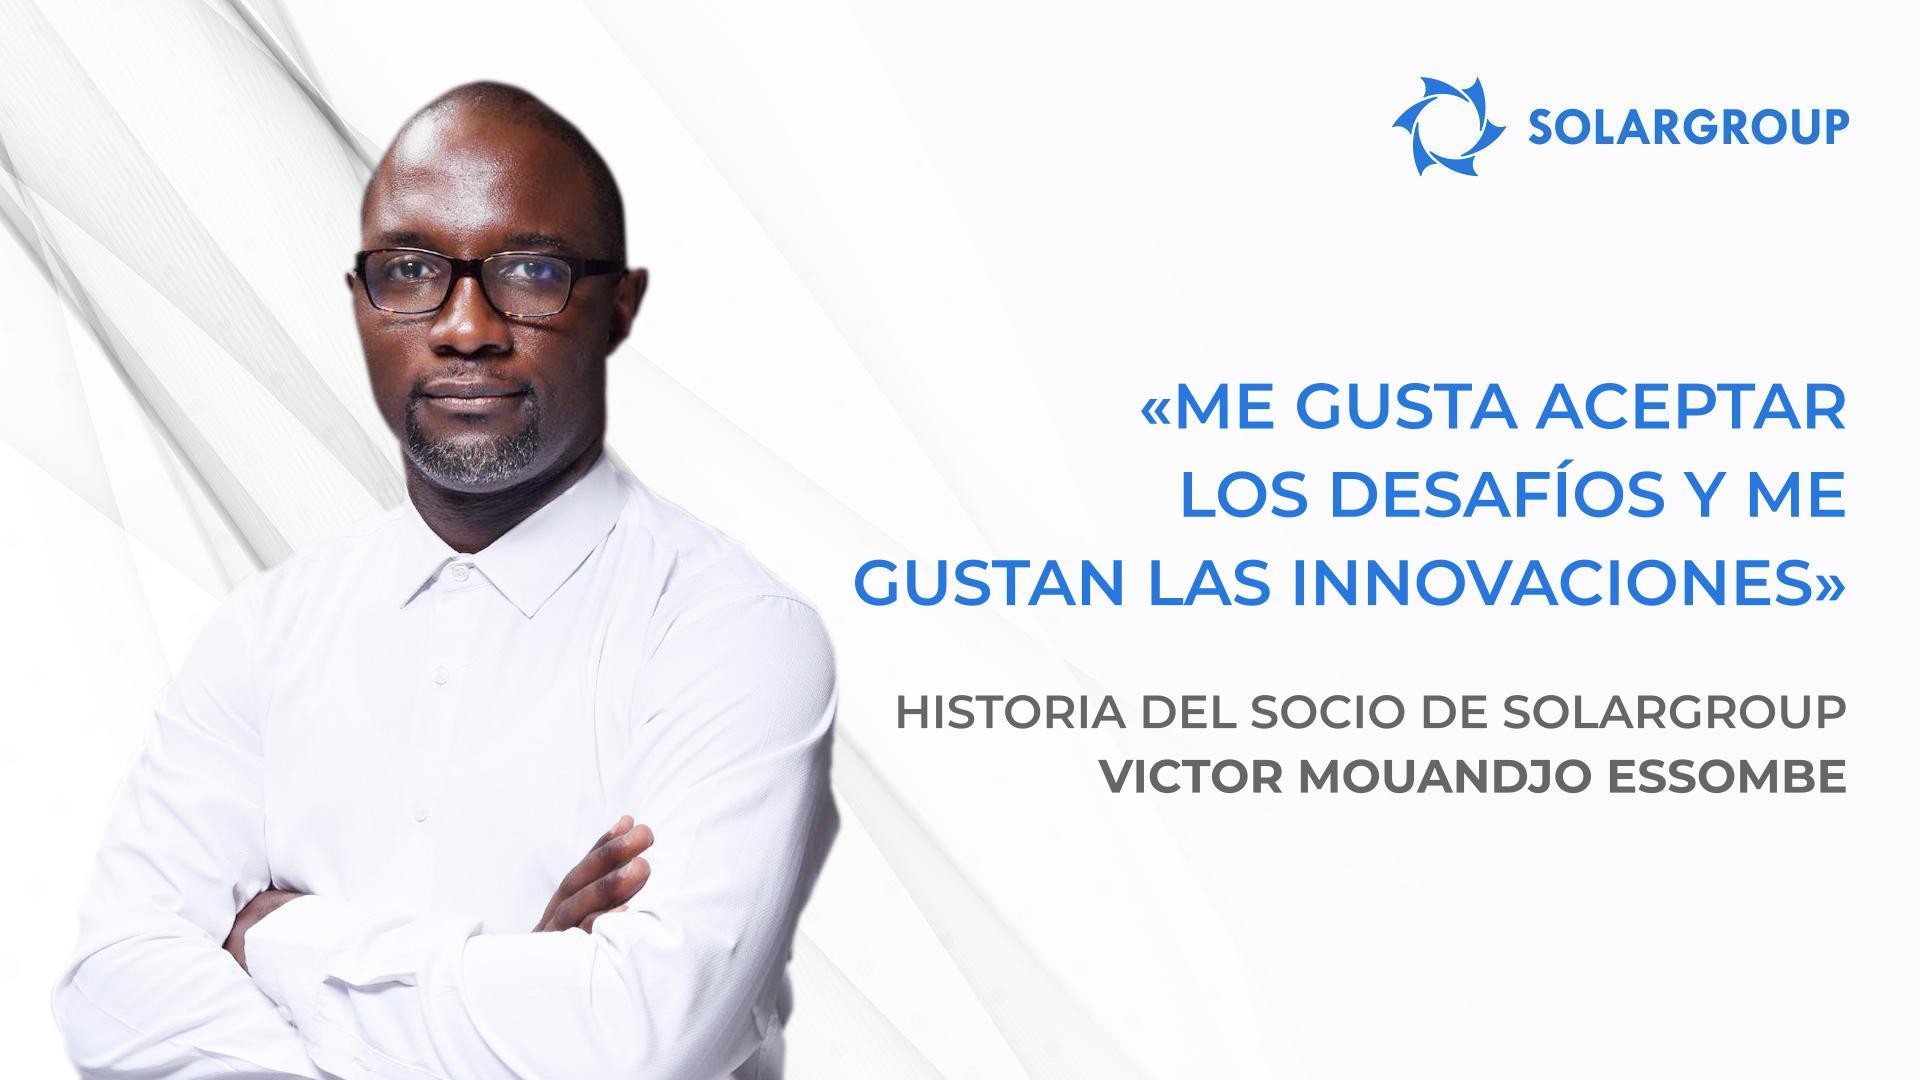 ¡Mi equipo y yo tenemos grandes planes! | Historia del socio de SOLARGROUP Victor Mouandjo Essombe